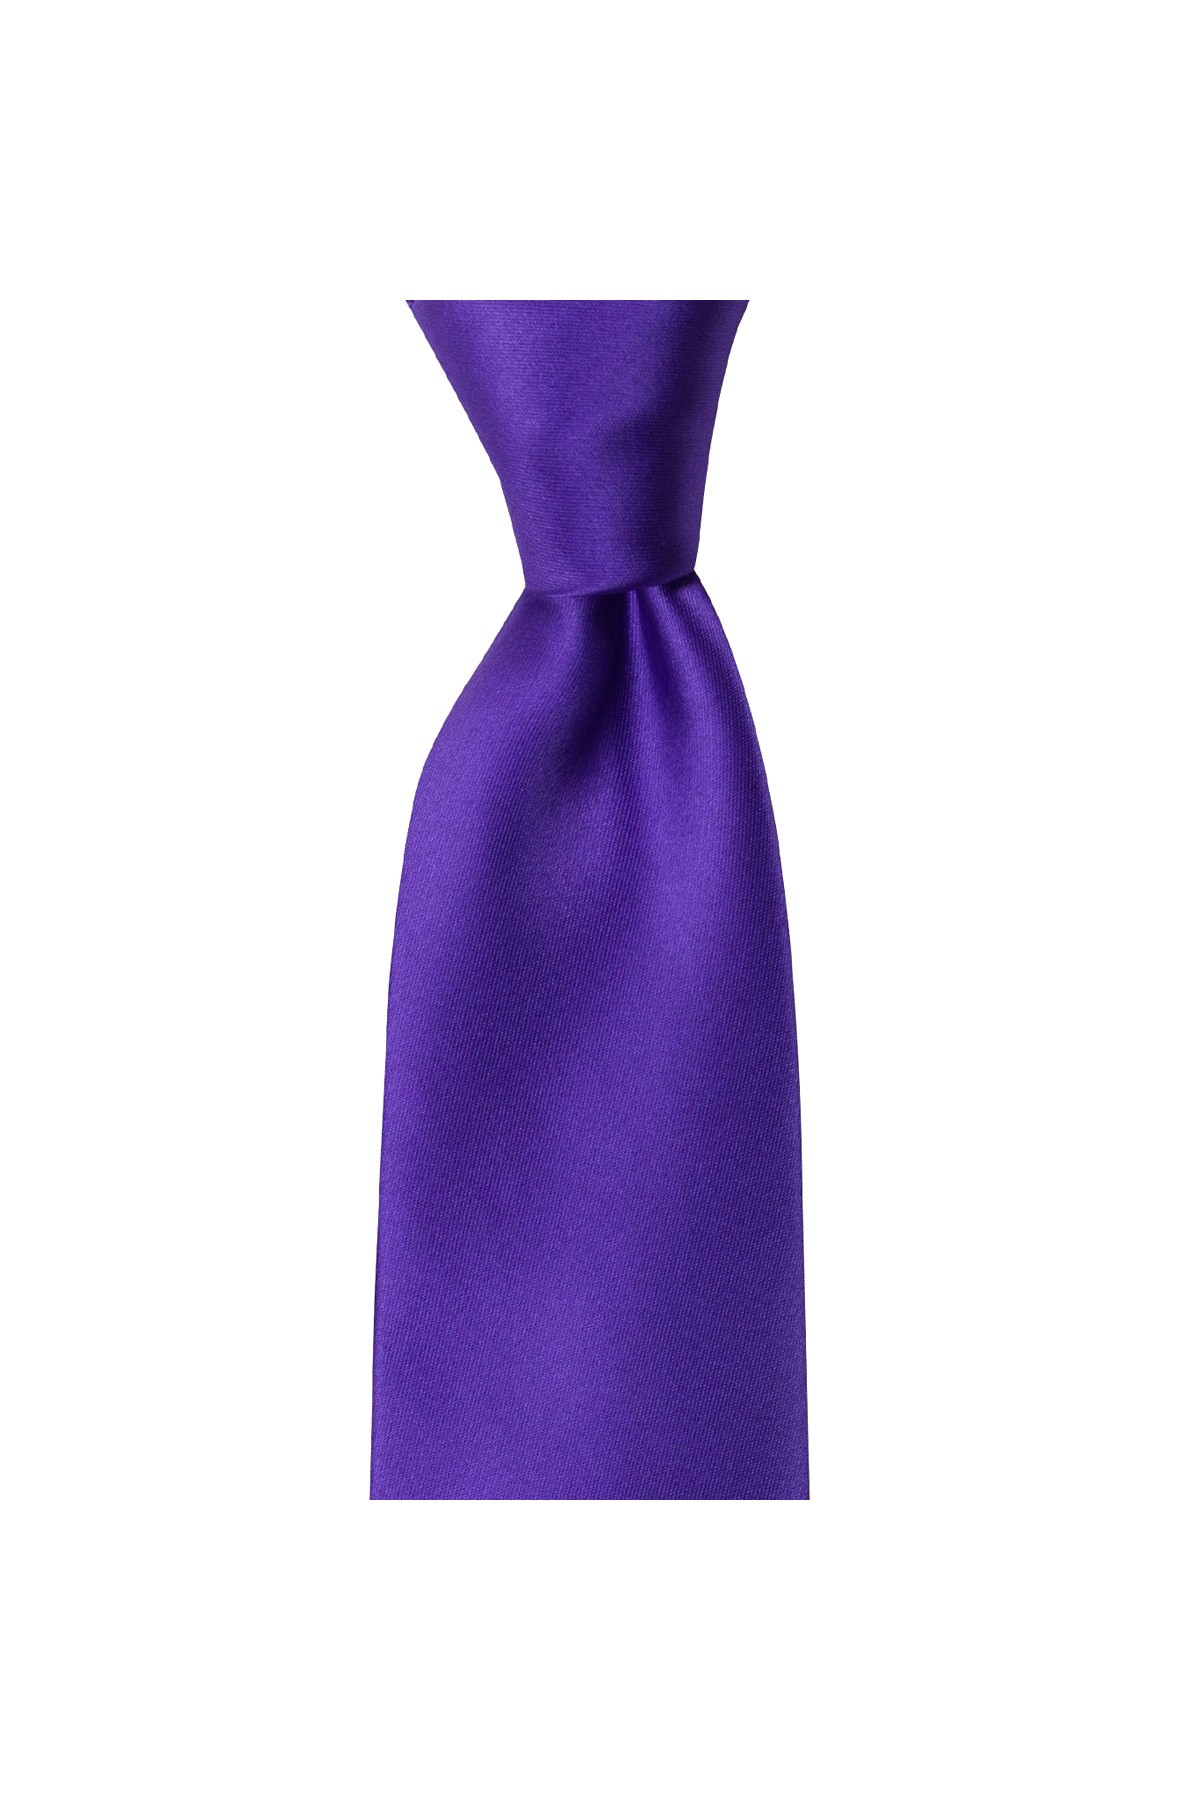 Klasik 8 cm genişliğinde mendilli kravat - Mürdüm